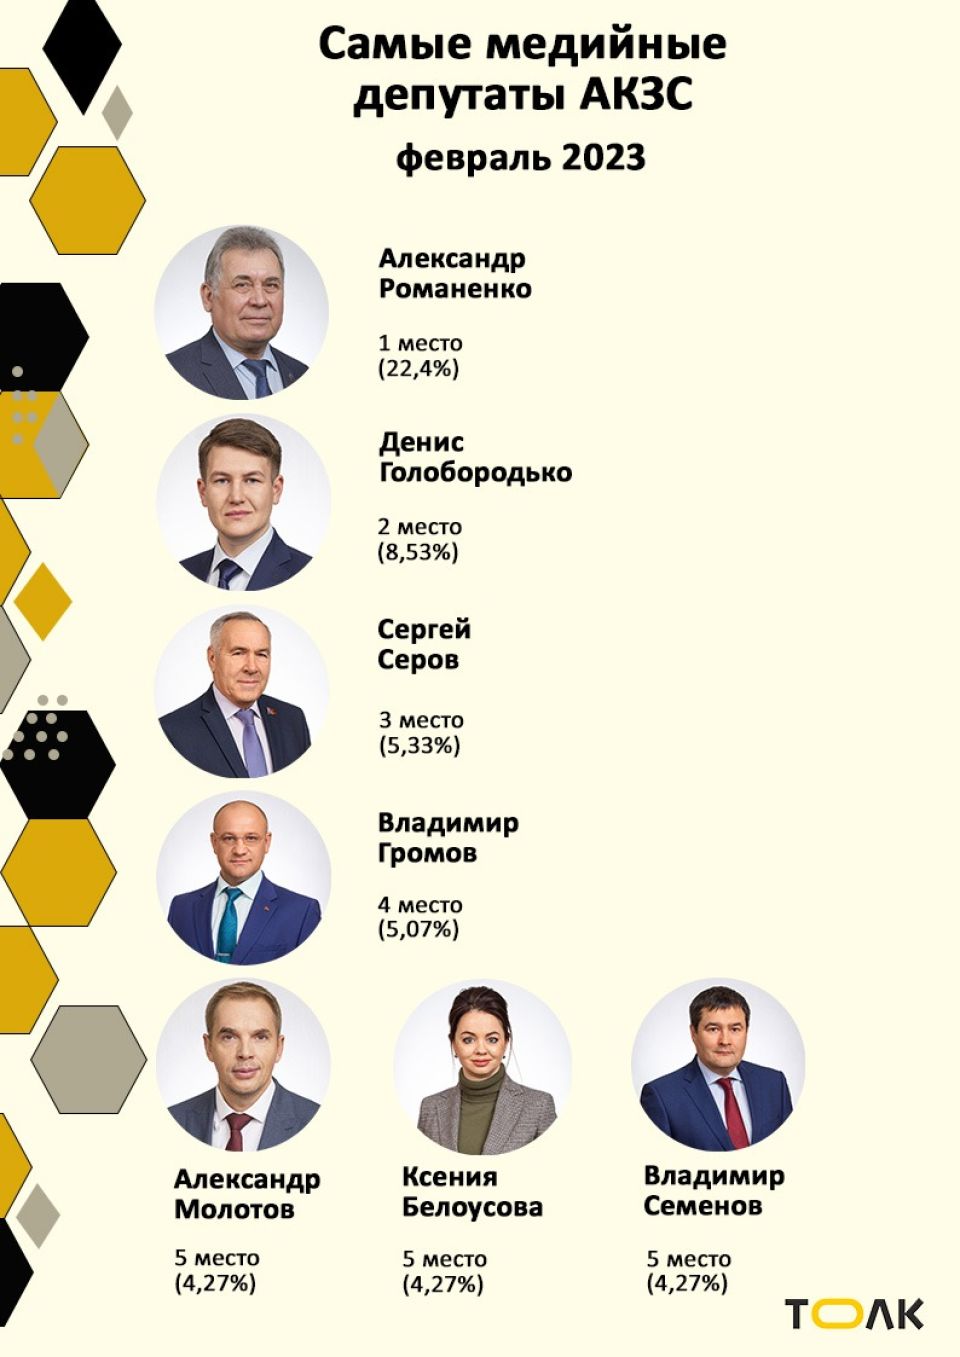 Рейтинг медийности депутатов АКЗС в феврале 2023 года